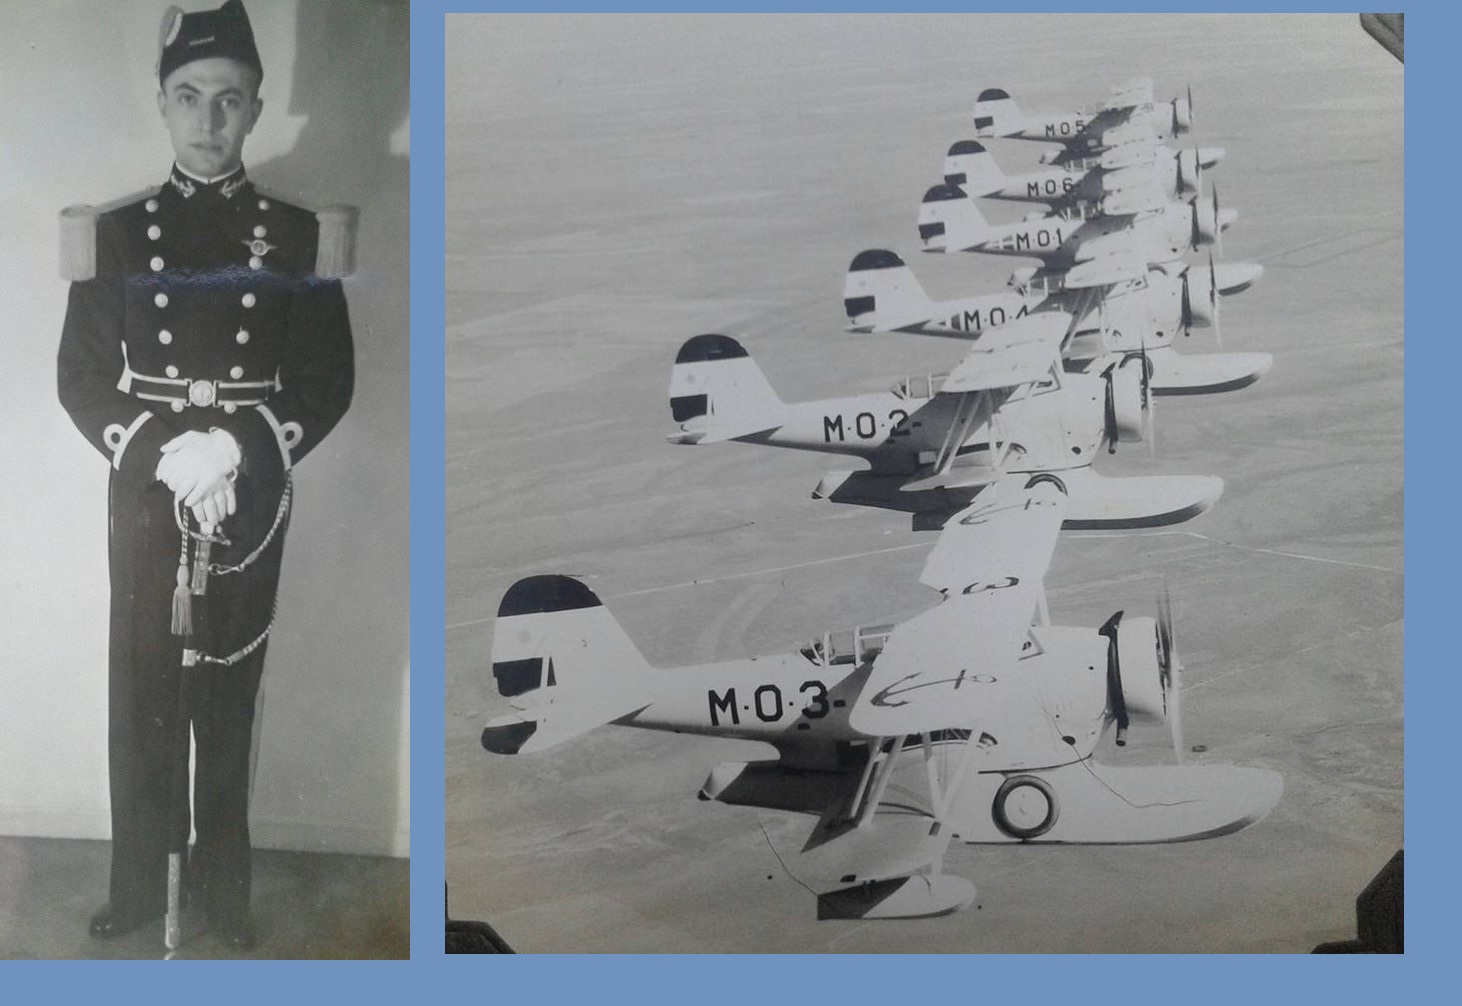 Año del Centenario de la Aviación Naval Argentina